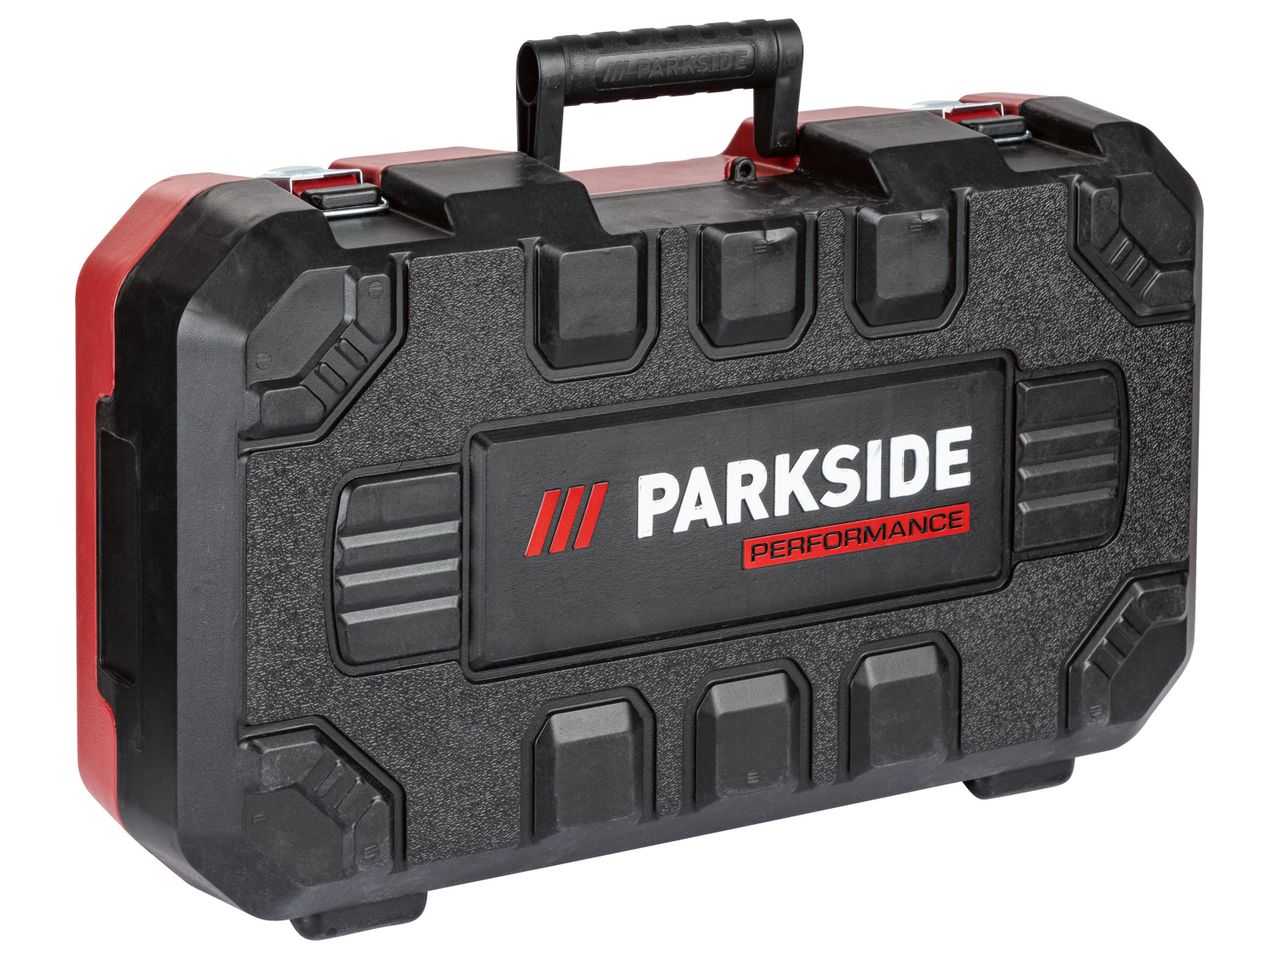 Ver empliada: Parkside Performance® Martelo Combinado 20 V sem Bateria - Imagem 3